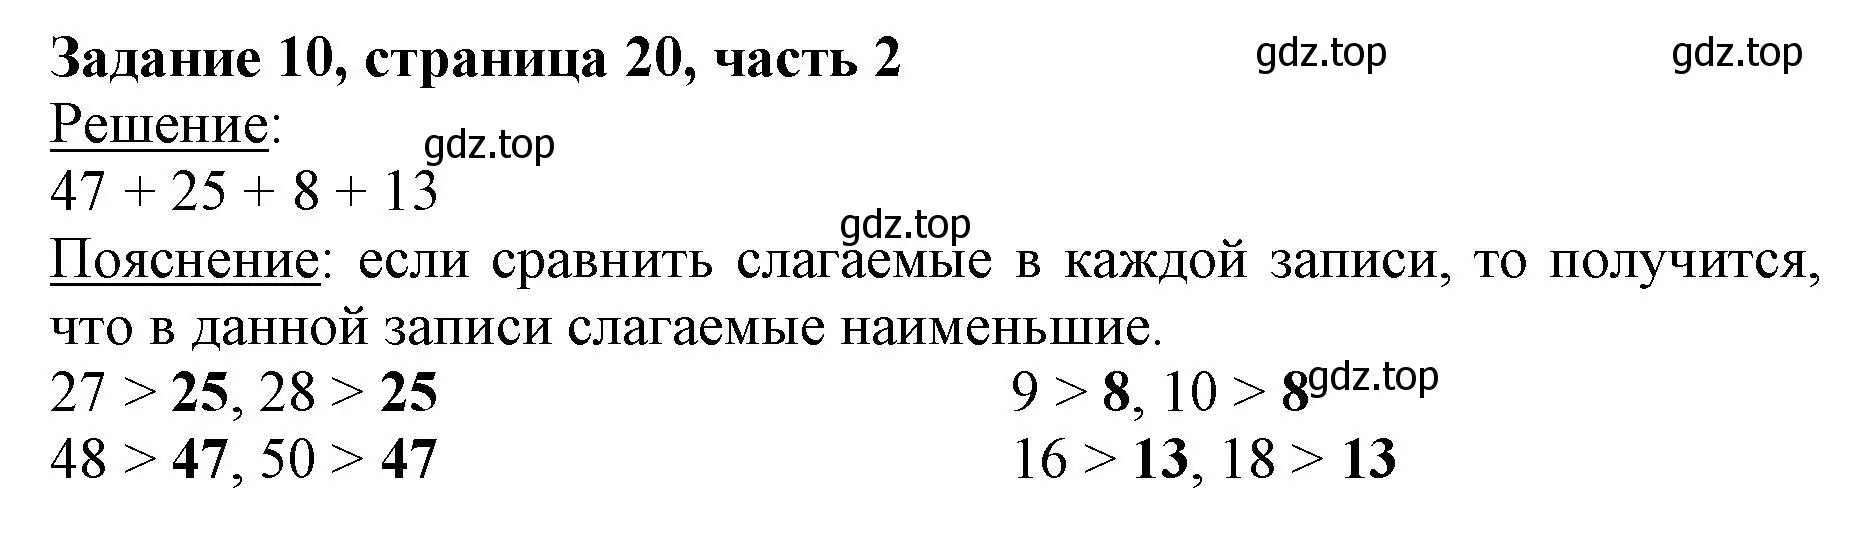 Решение номер 10 (страница 20) гдз по математике 3 класс Моро, Бантова, учебник 2 часть